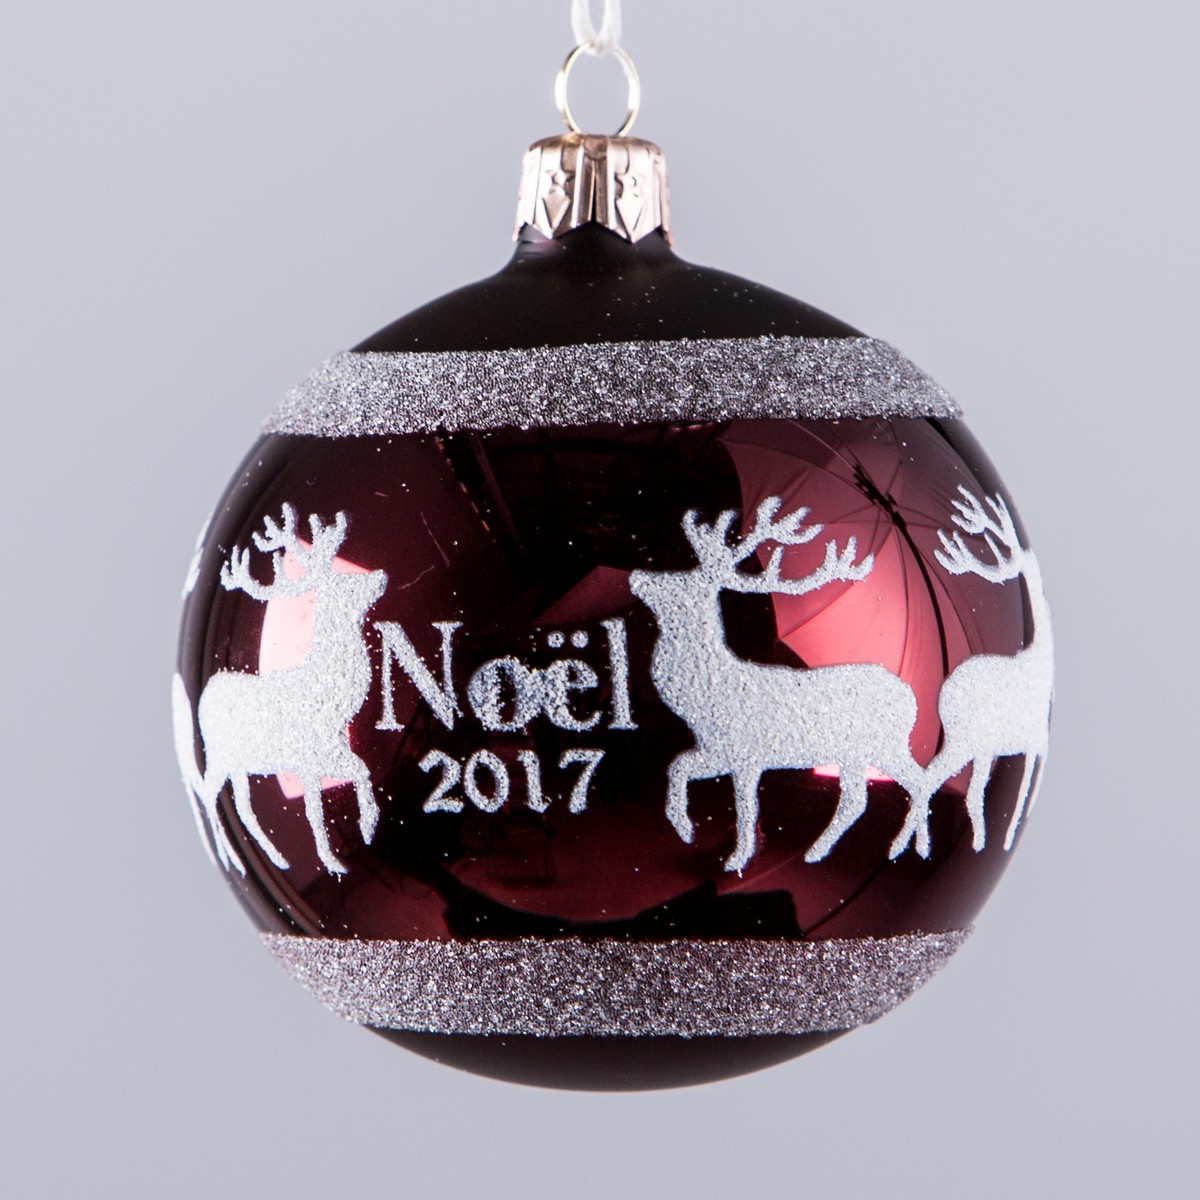   Boule Cerf Noël 2017 80mm Rouge bordeaux 8cm